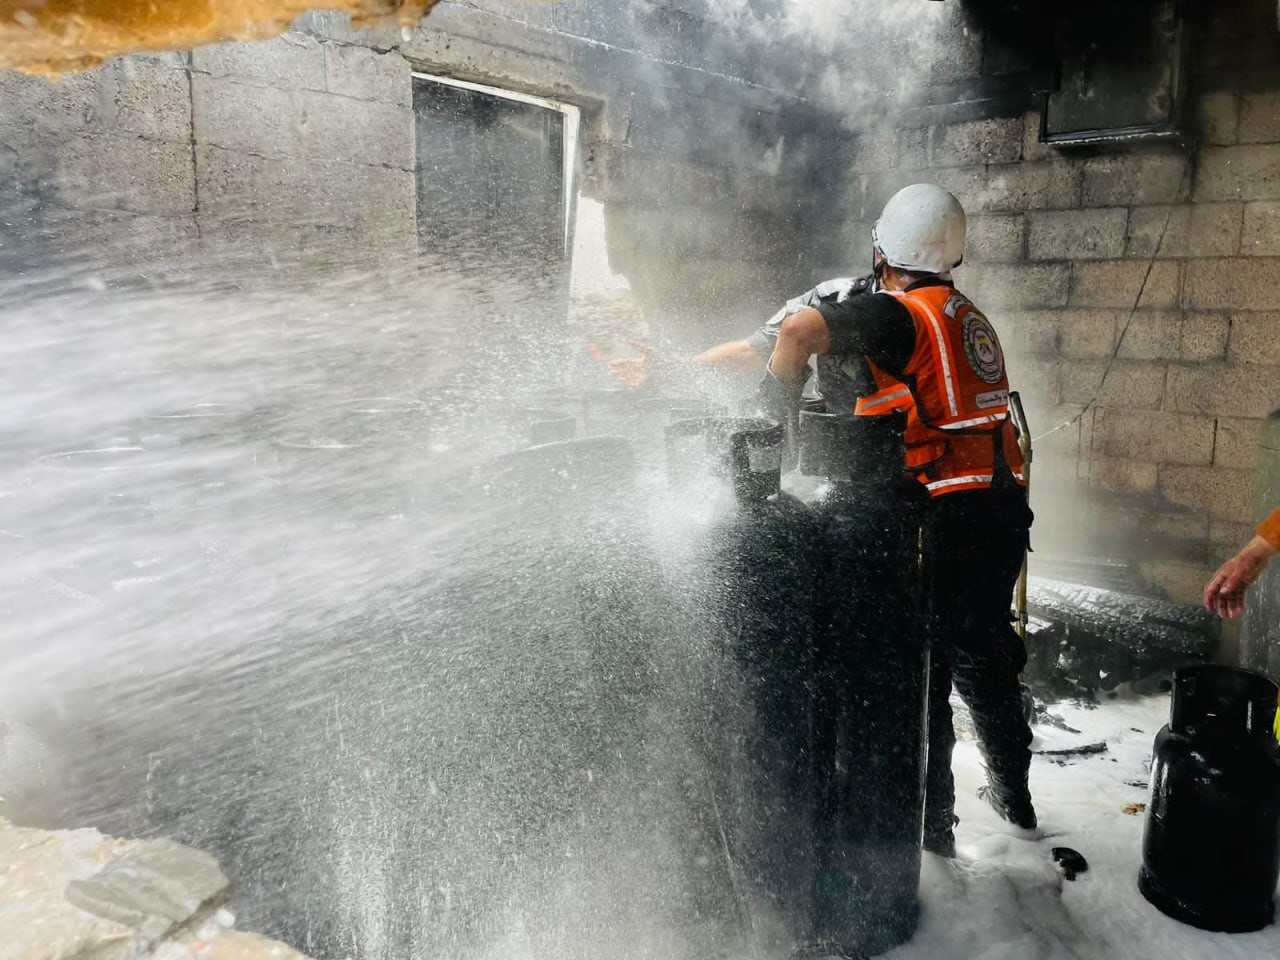  الدفاع المدني بغزّة يتمكن من السيطرة على حريق شبَّ داخل نقطة عشوائية لتعبئة الغاز